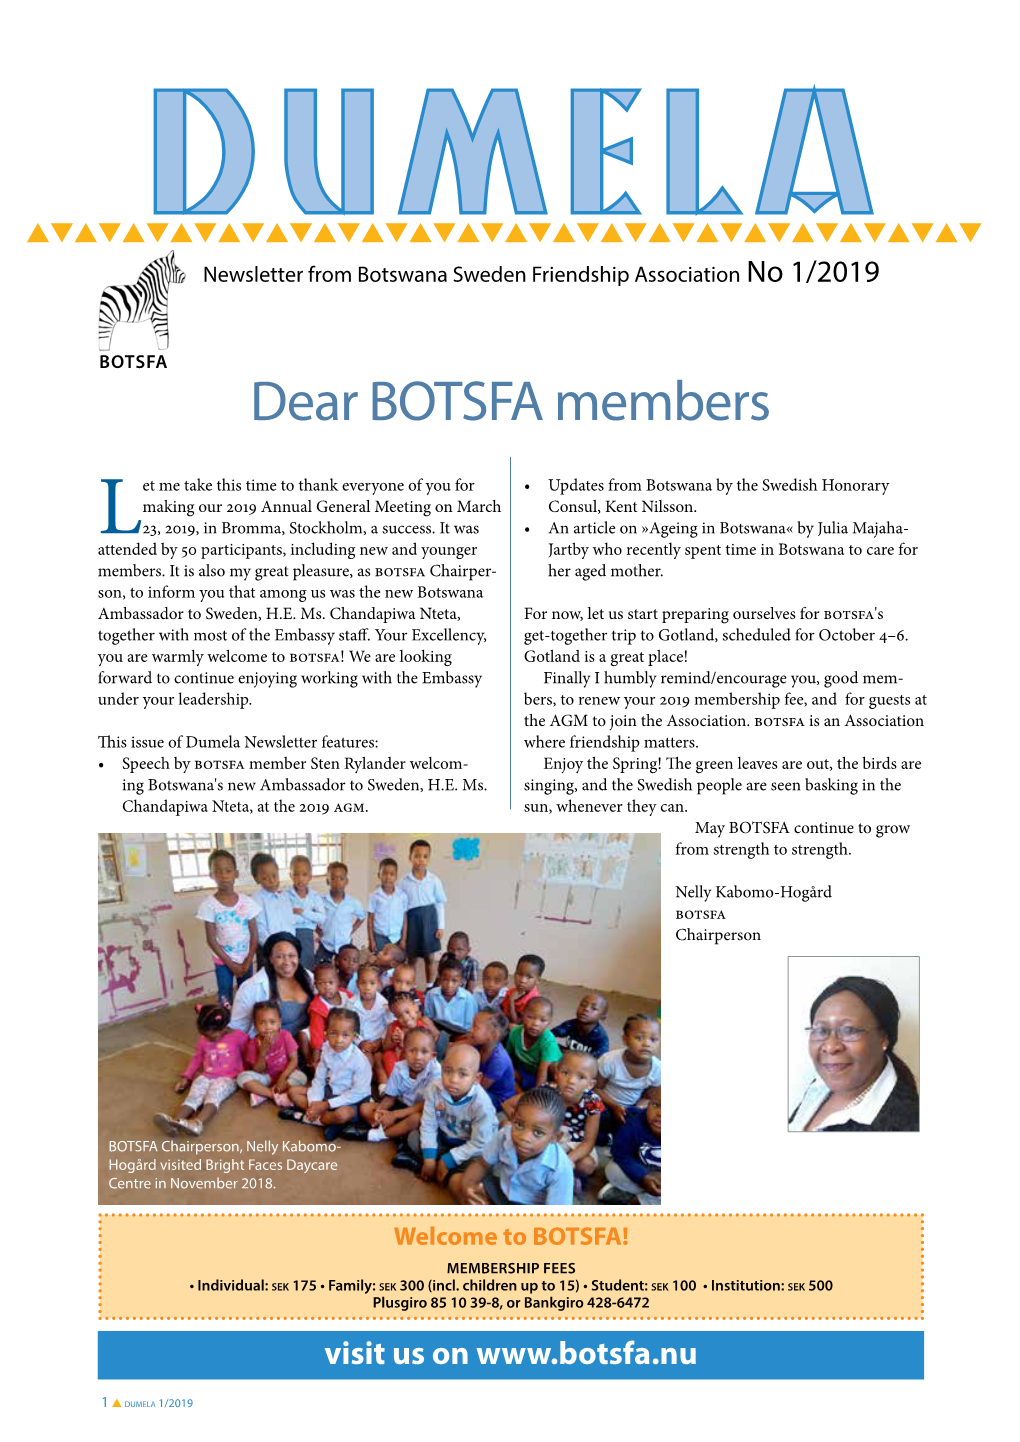 Dear BOTSFA Members